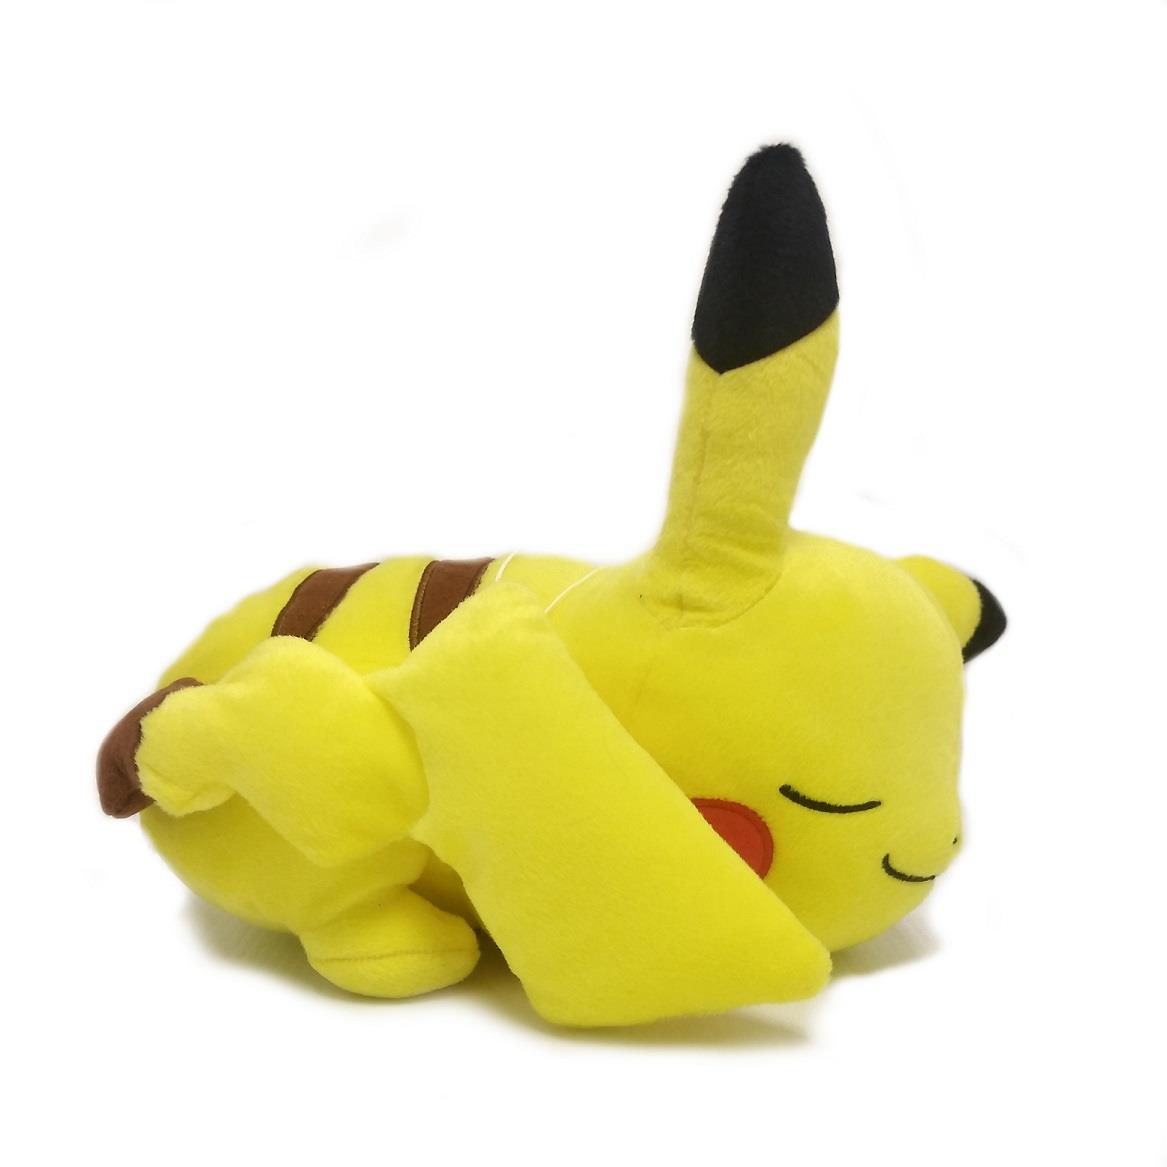 Pokemon: Pikachu 10" Laying The Power of Us Banpresto Plush